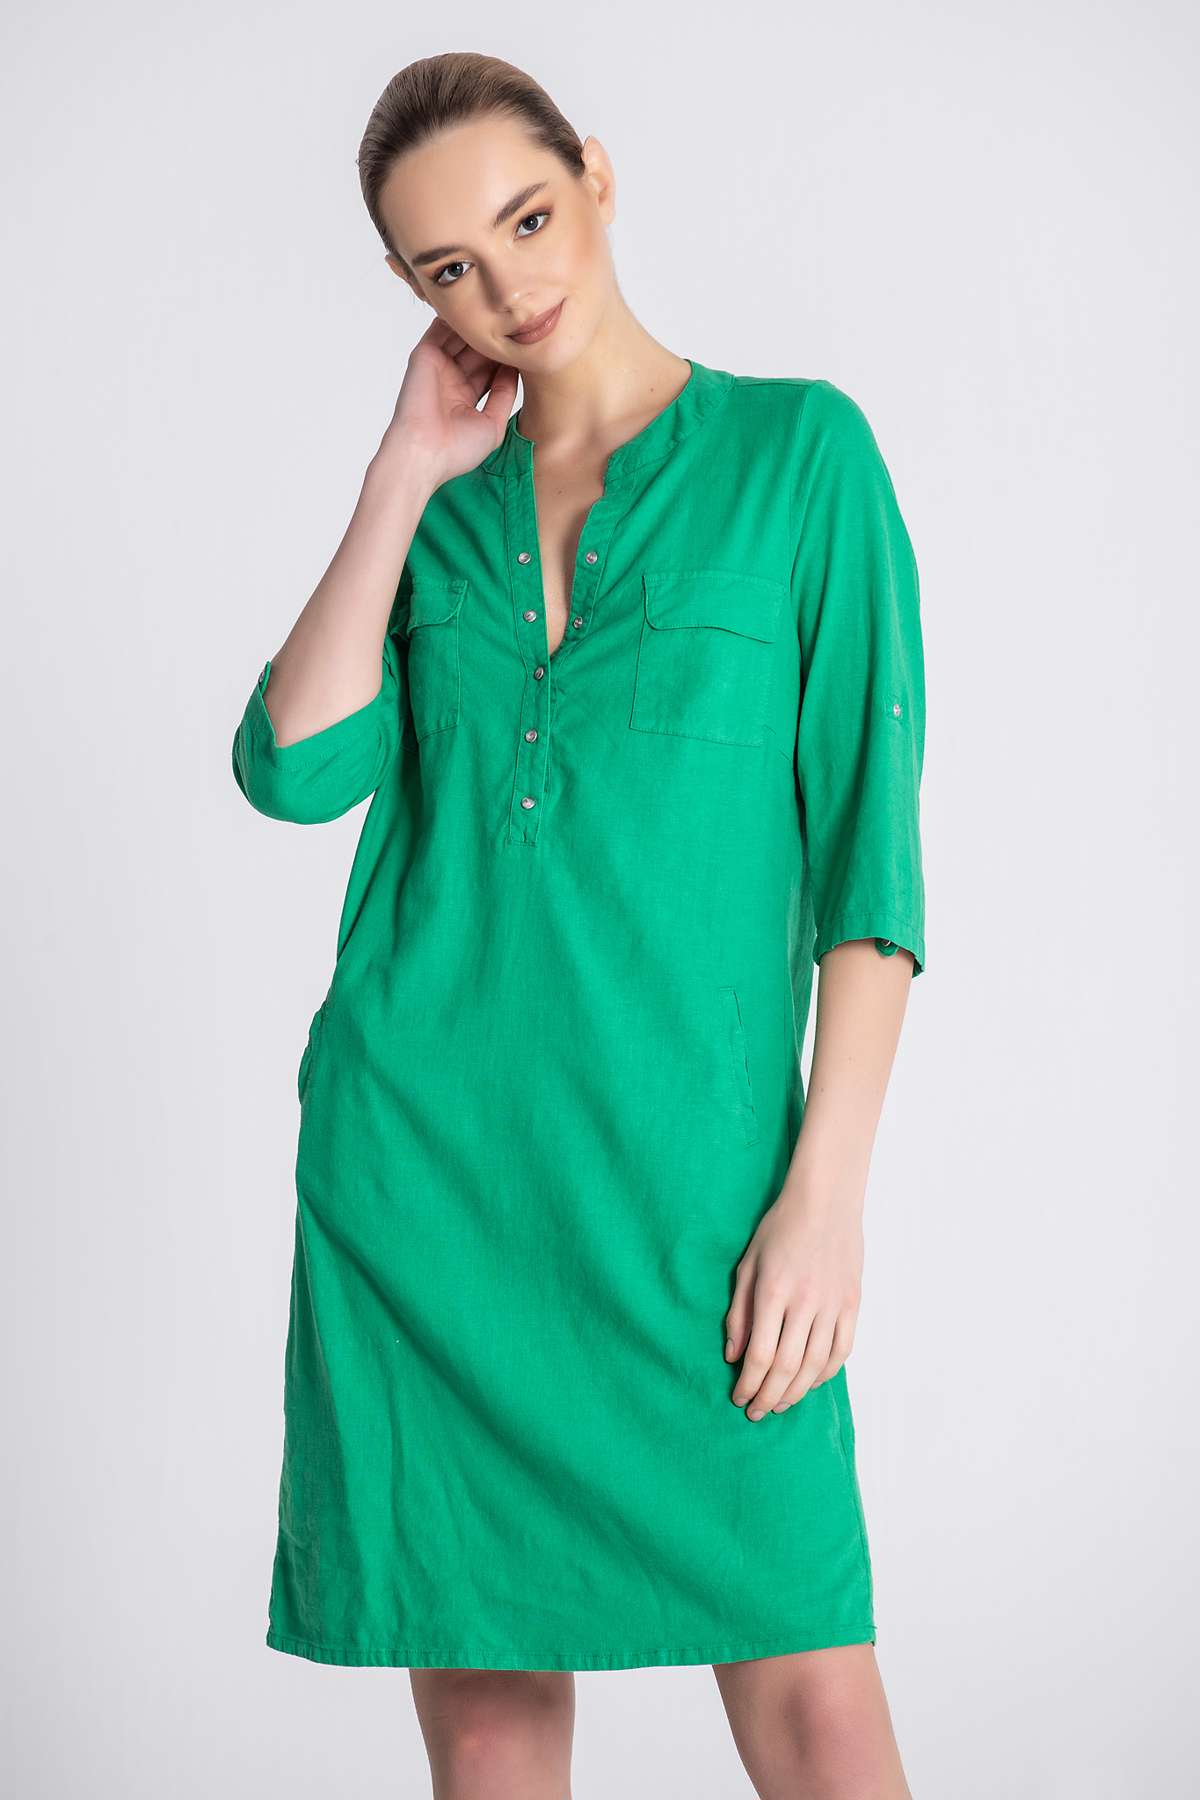 Ella Green Dress closeup